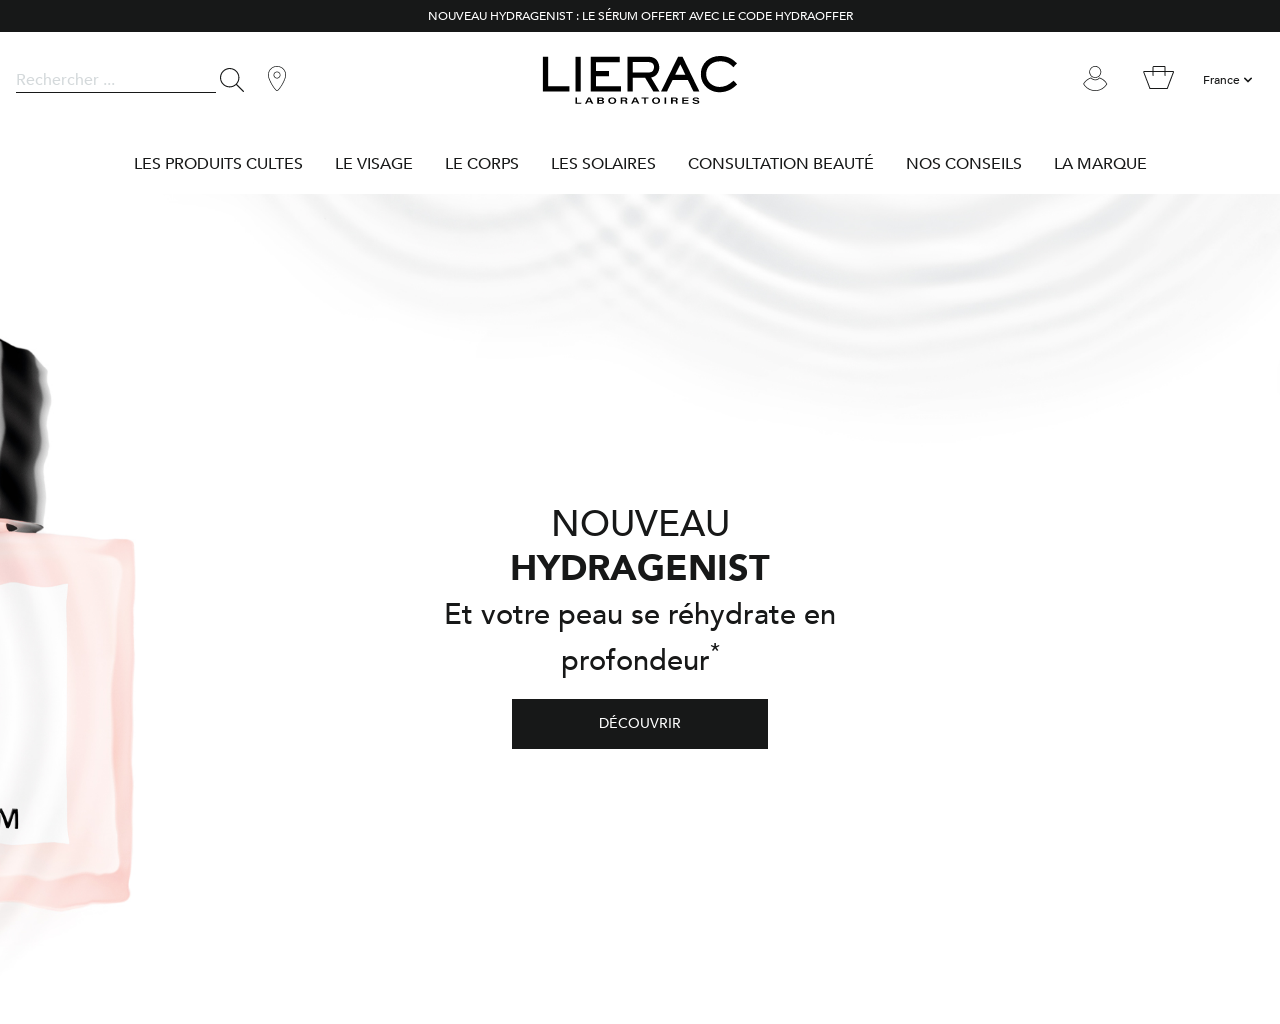 www.lierac.fr